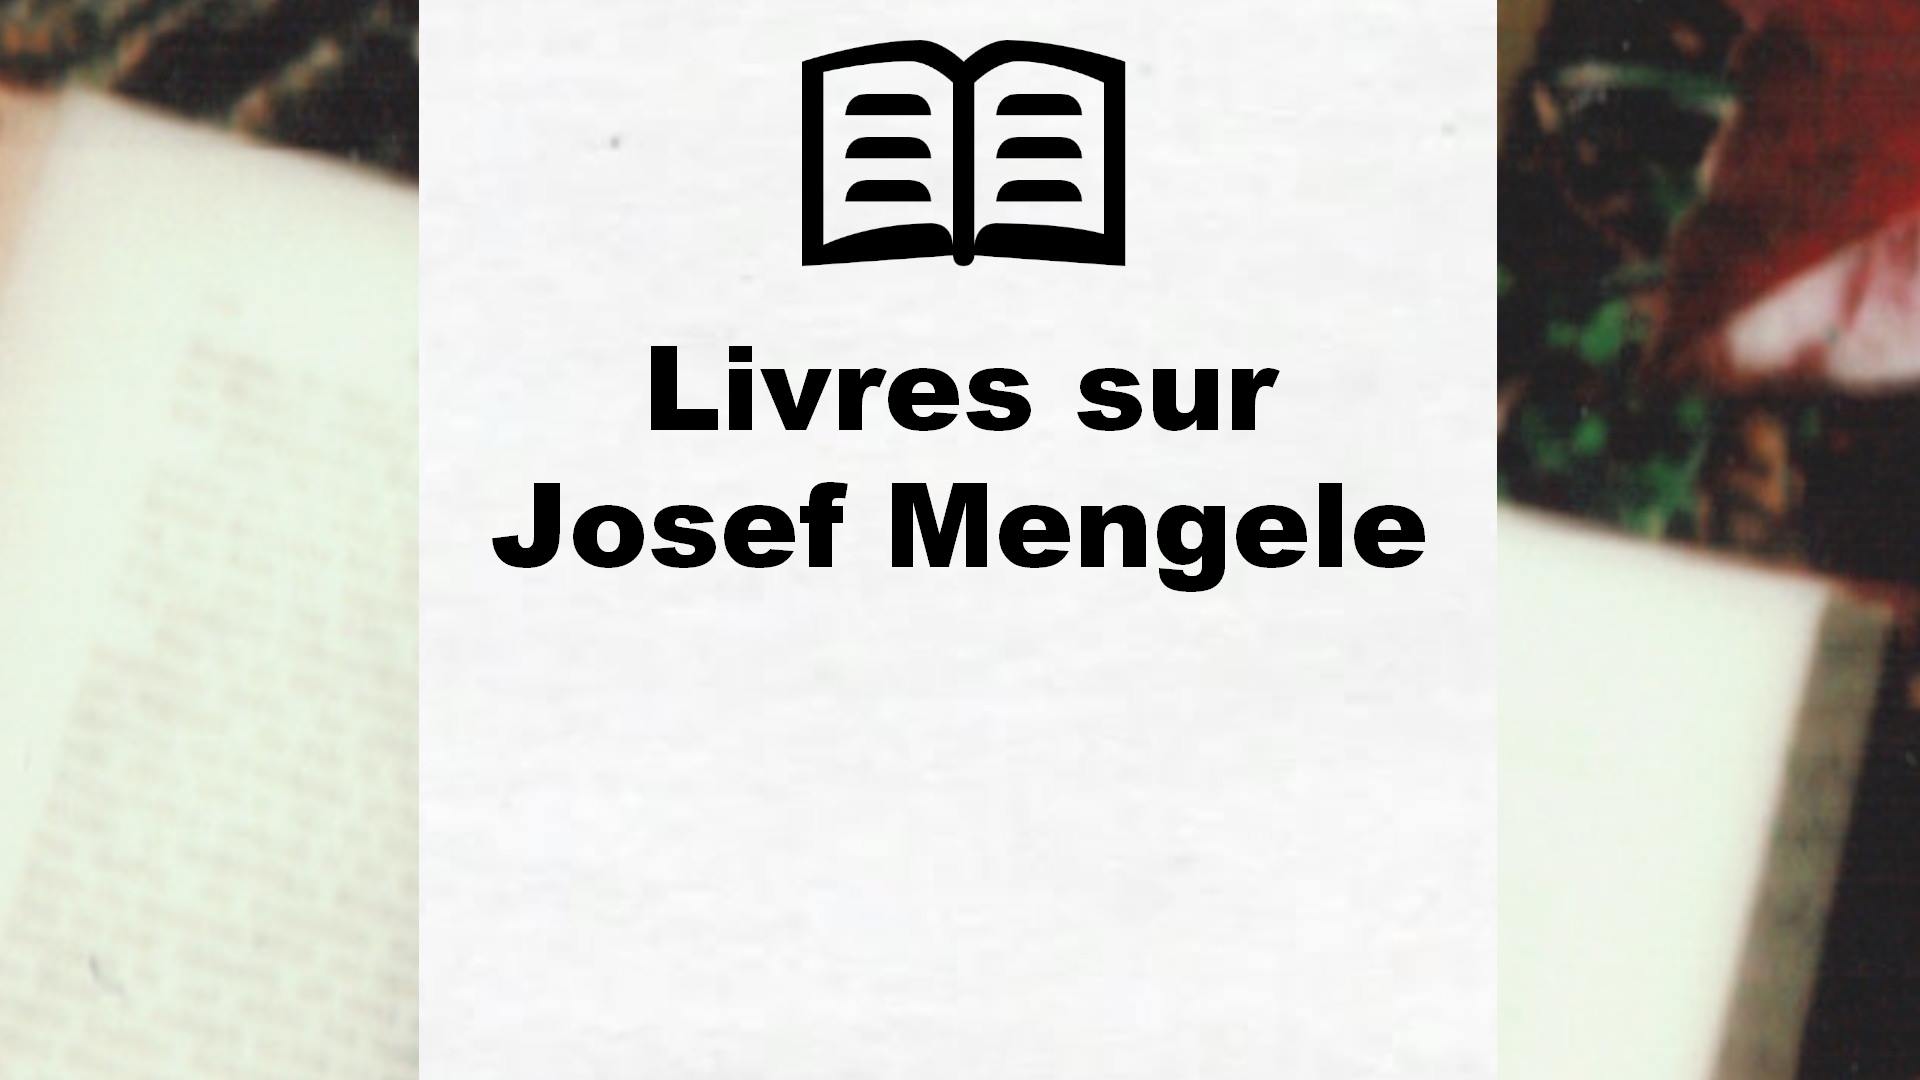 Livres sur Josef Mengele